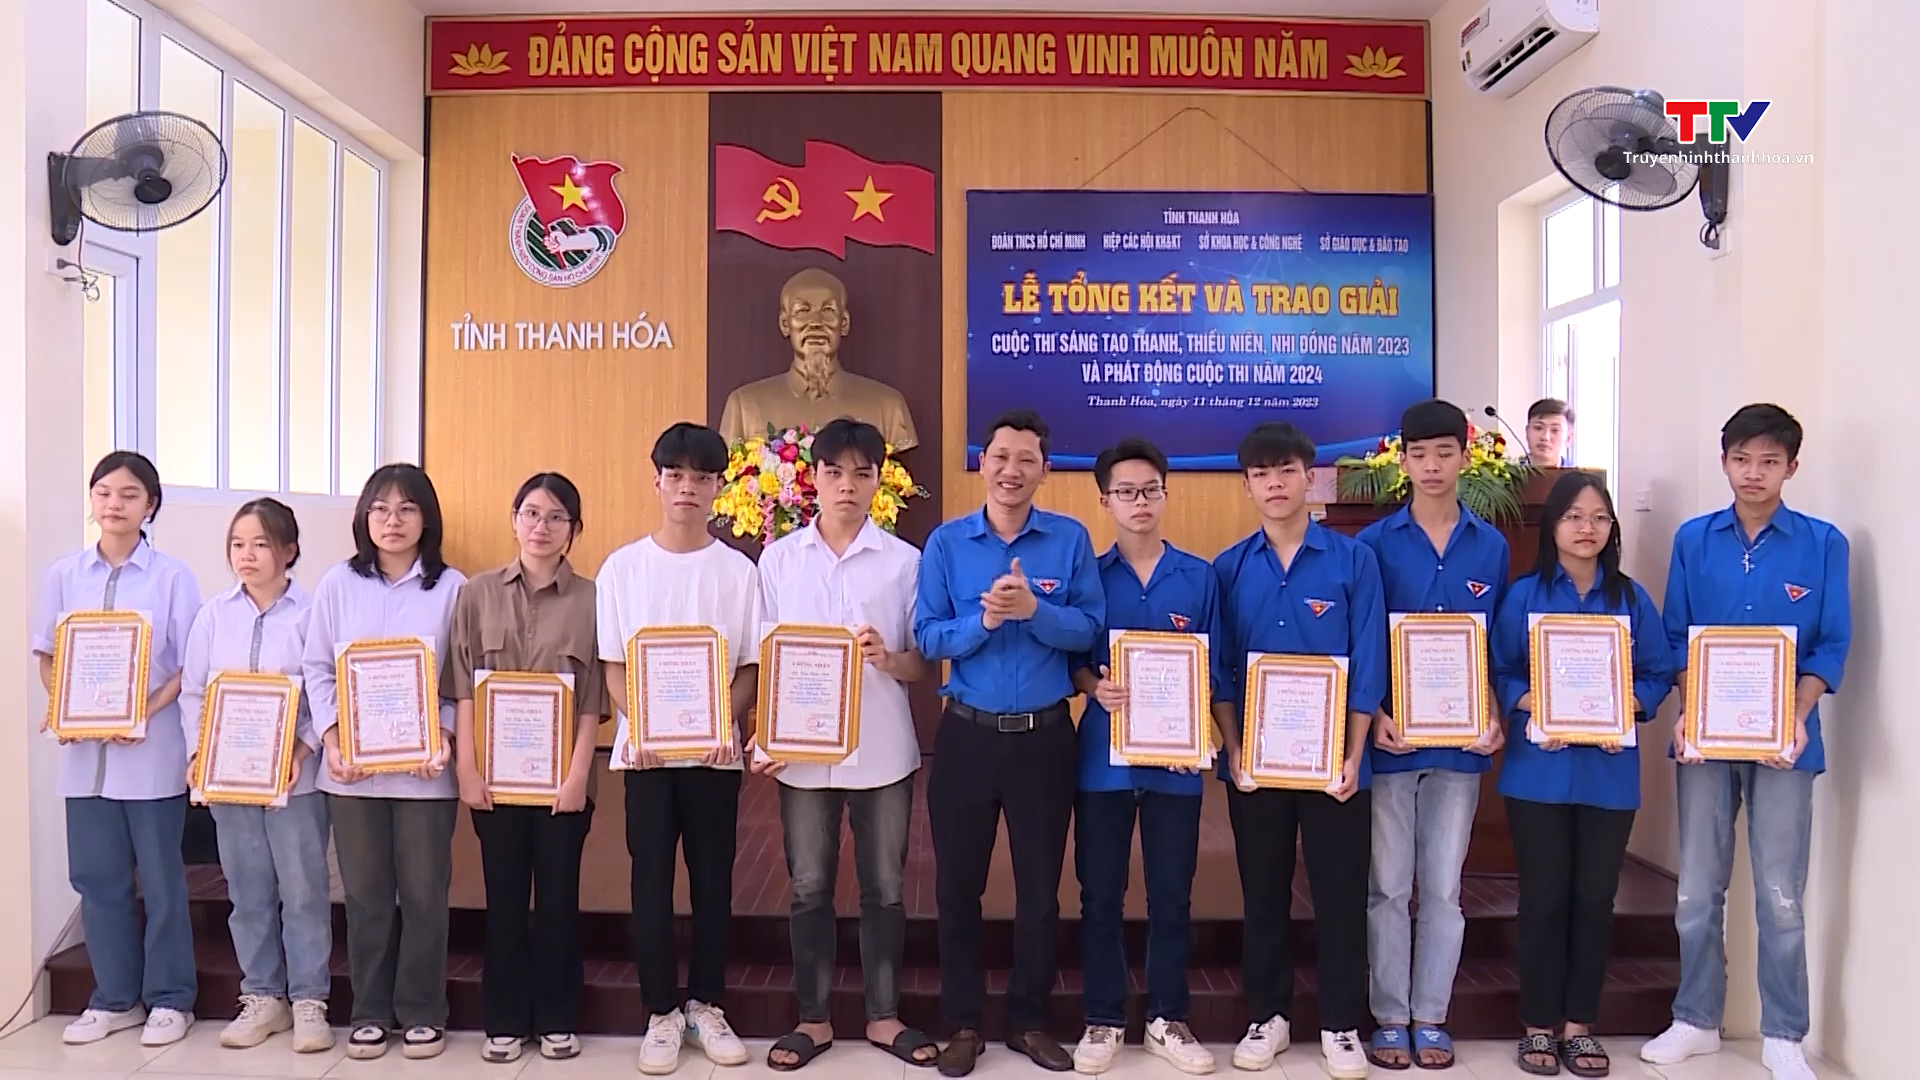 Trao giải Cuộc thi sáng tạo dành cho thanh thiếu niên, nhi đồng, tỉnh Thanh Hóa năm 2023- Ảnh 1.